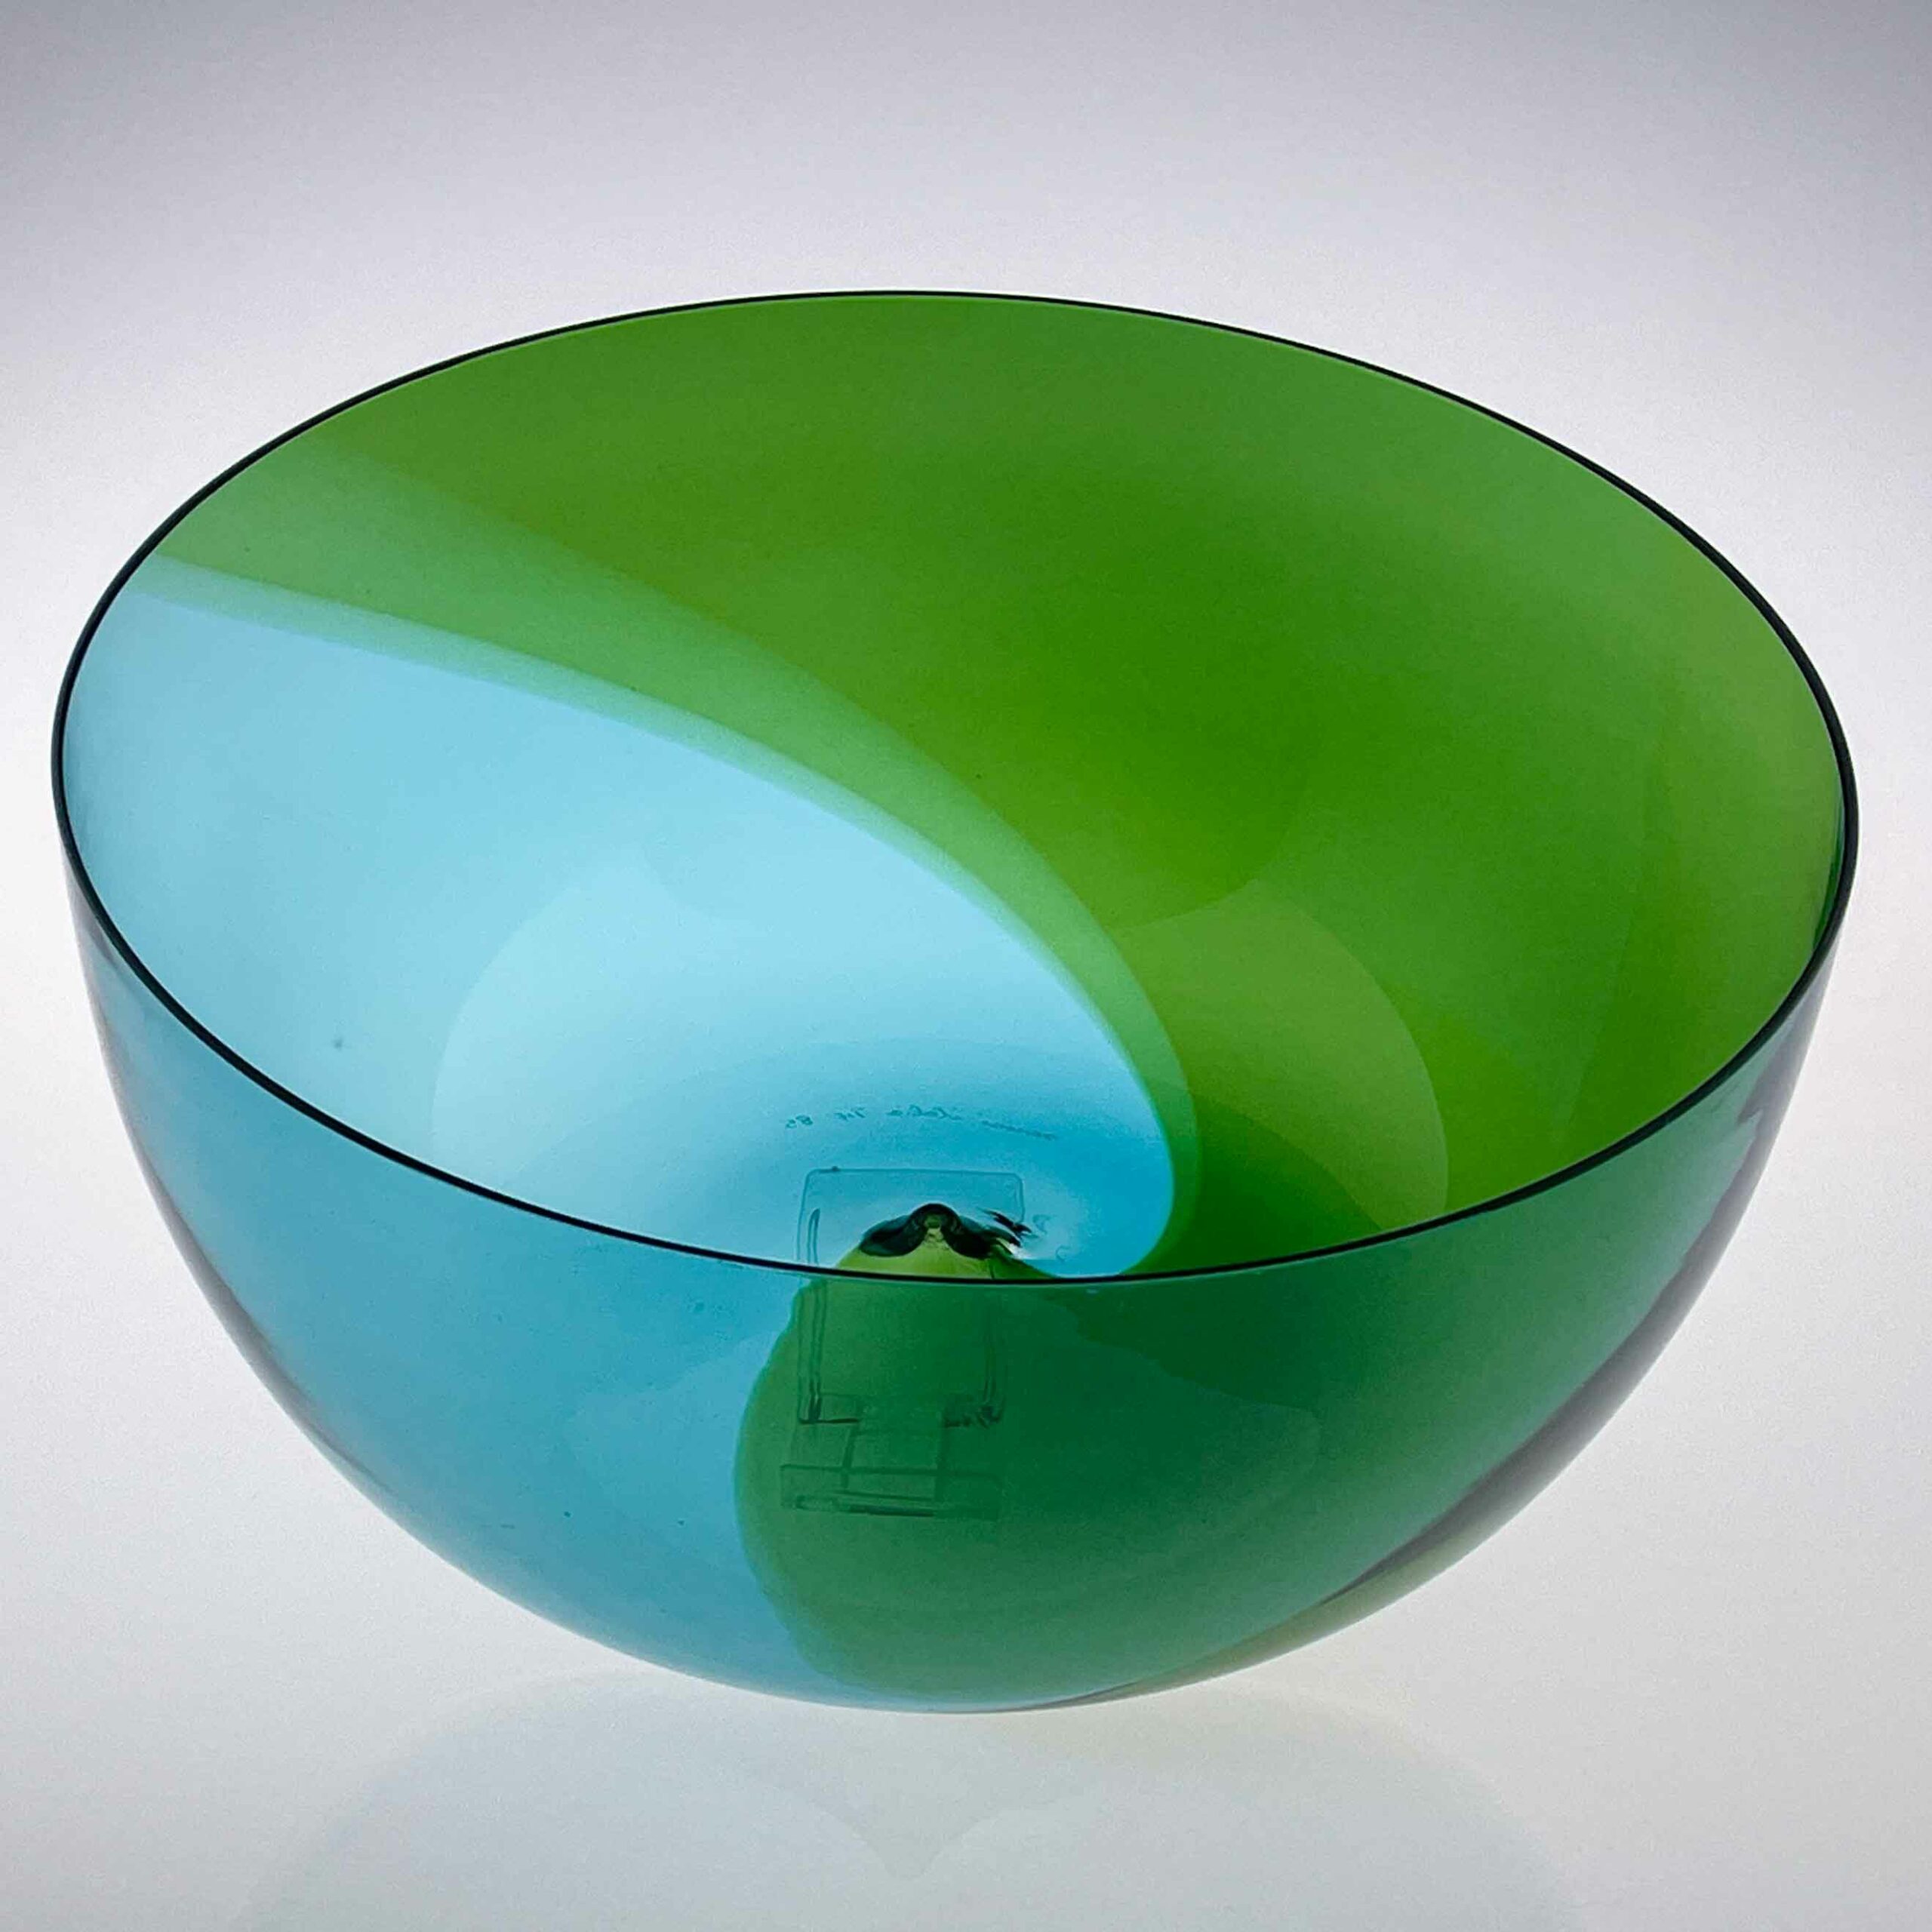 Tapio Wirkkala - Glass art-object "Coreano", model 504.4 - Venini, Italy 1984